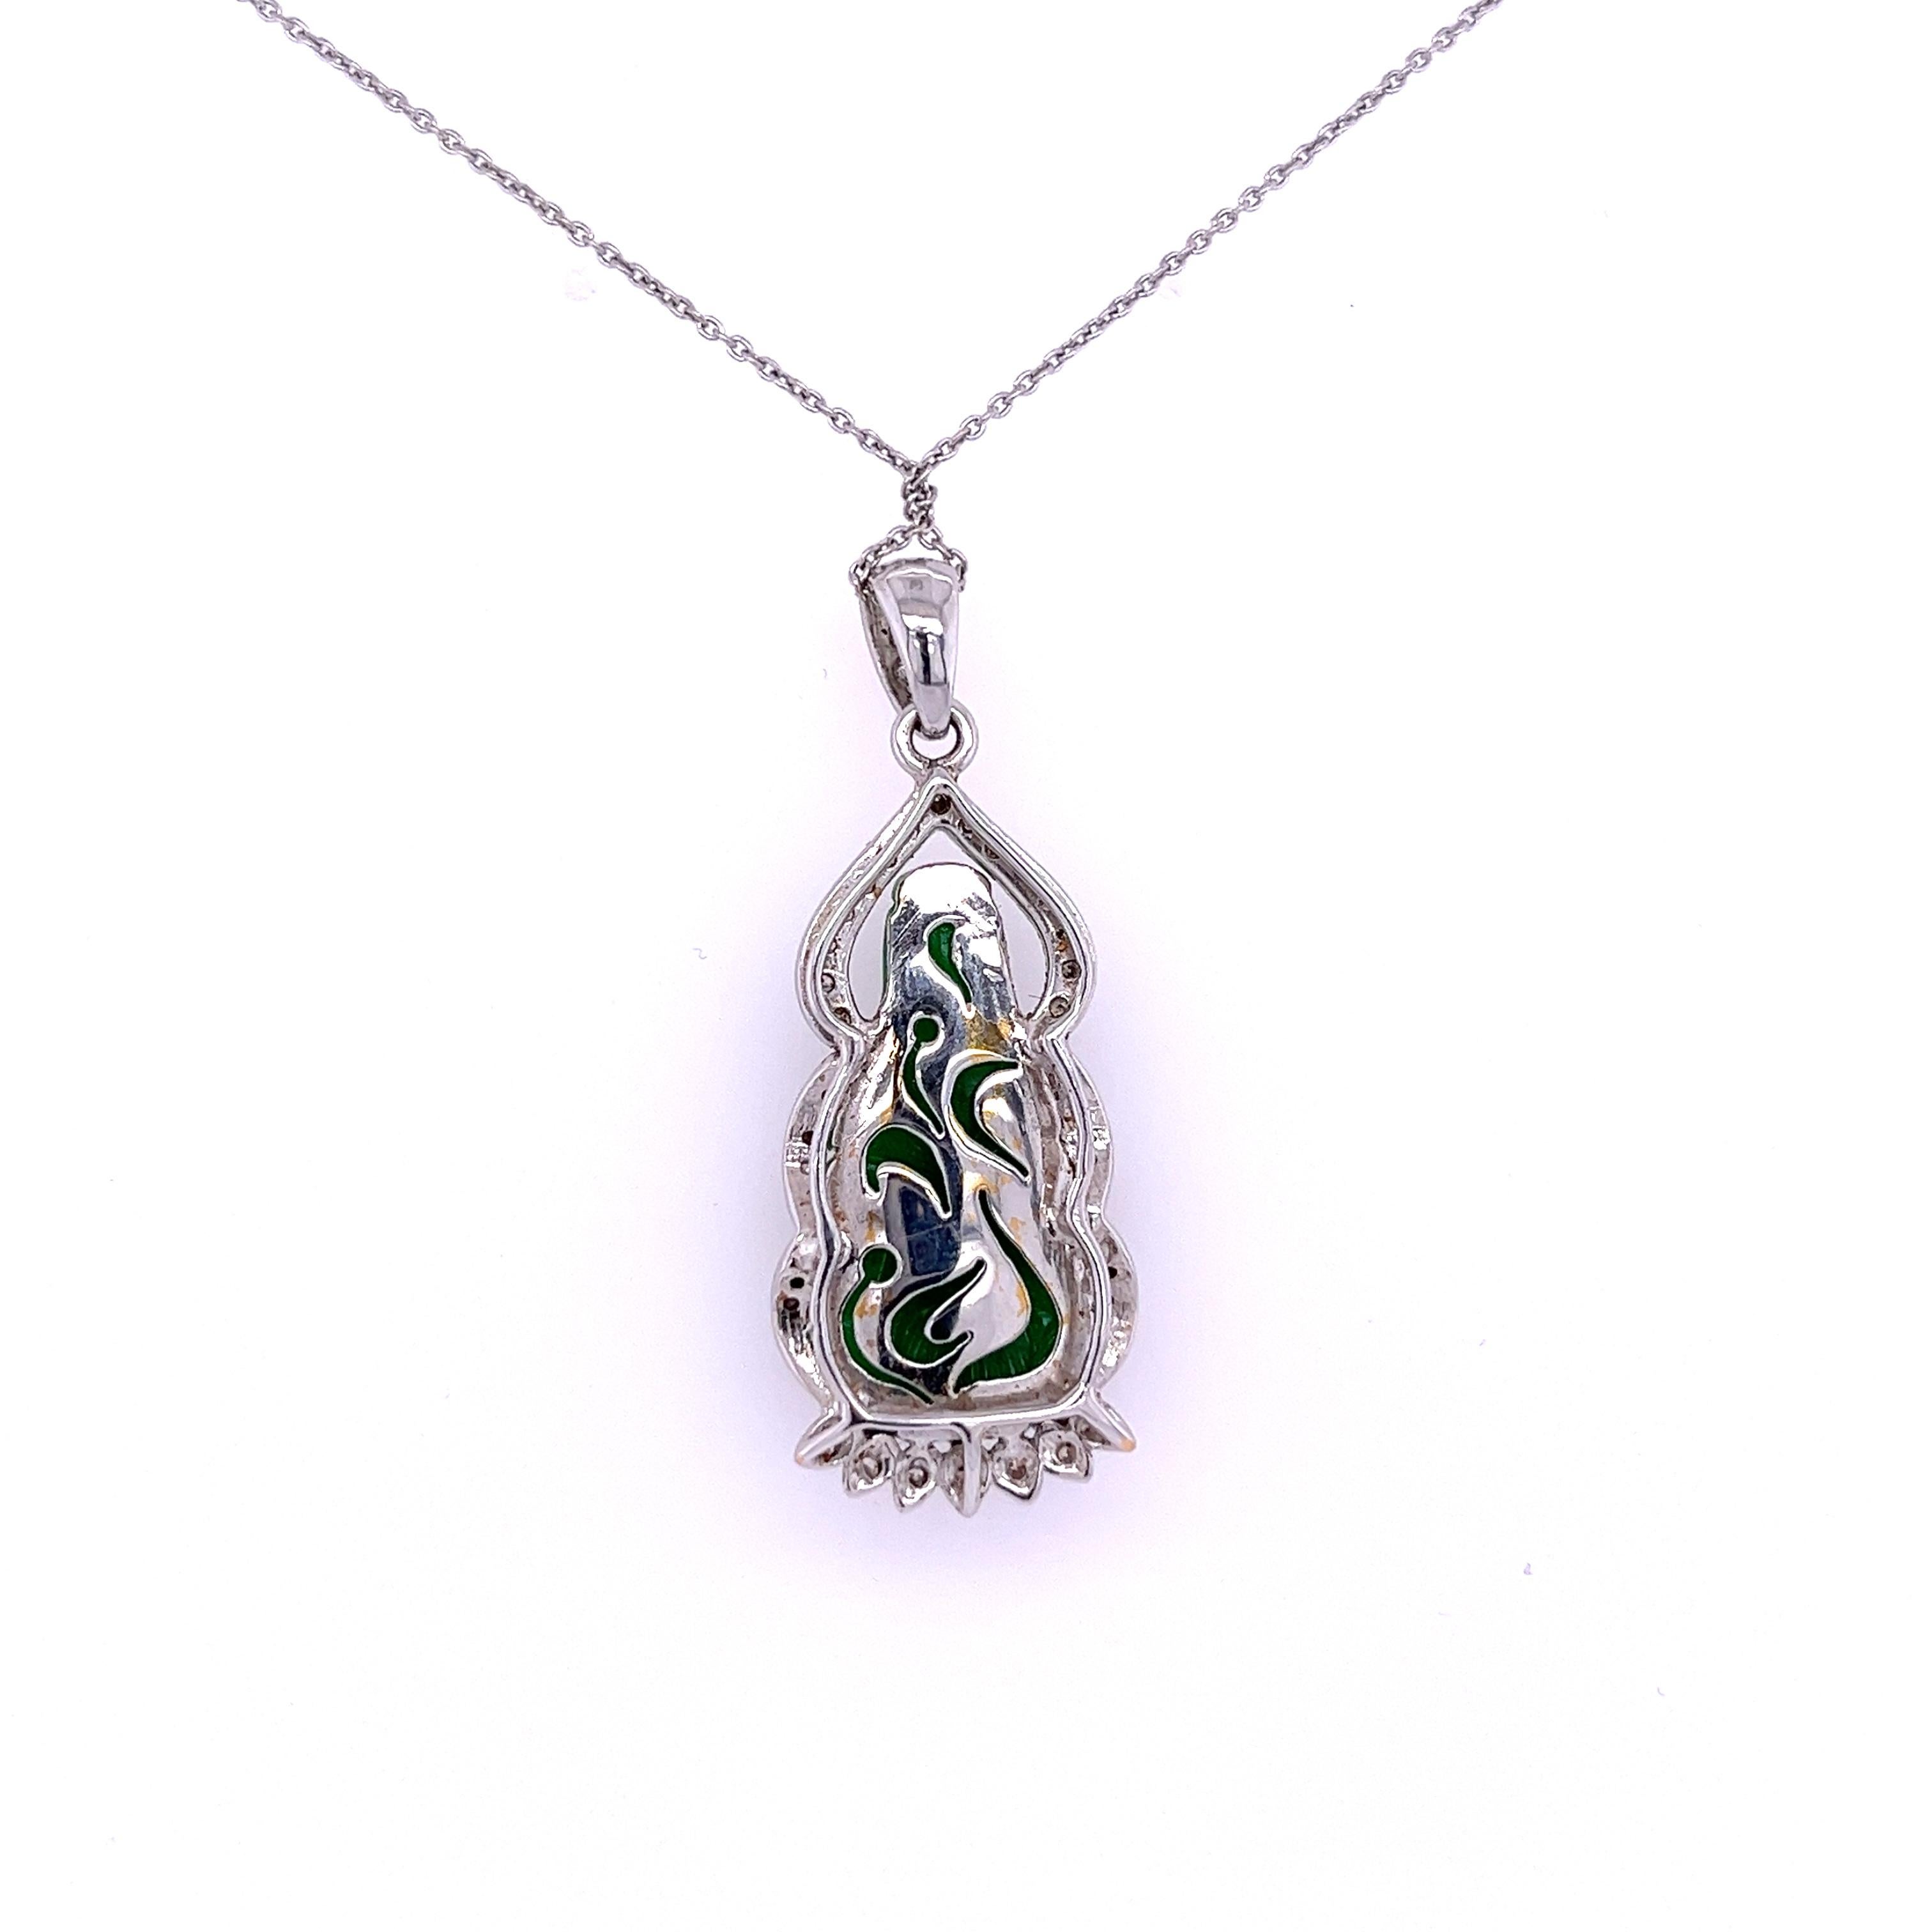 les pierres latérales en diamant contrastent parfaitement avec la vibration et la teinte verte profonde du jade. 

Ce collier est une manifestation féconde de la culture et de l'histoire chinoises. Le jade est typiquement chinois, et le portrait